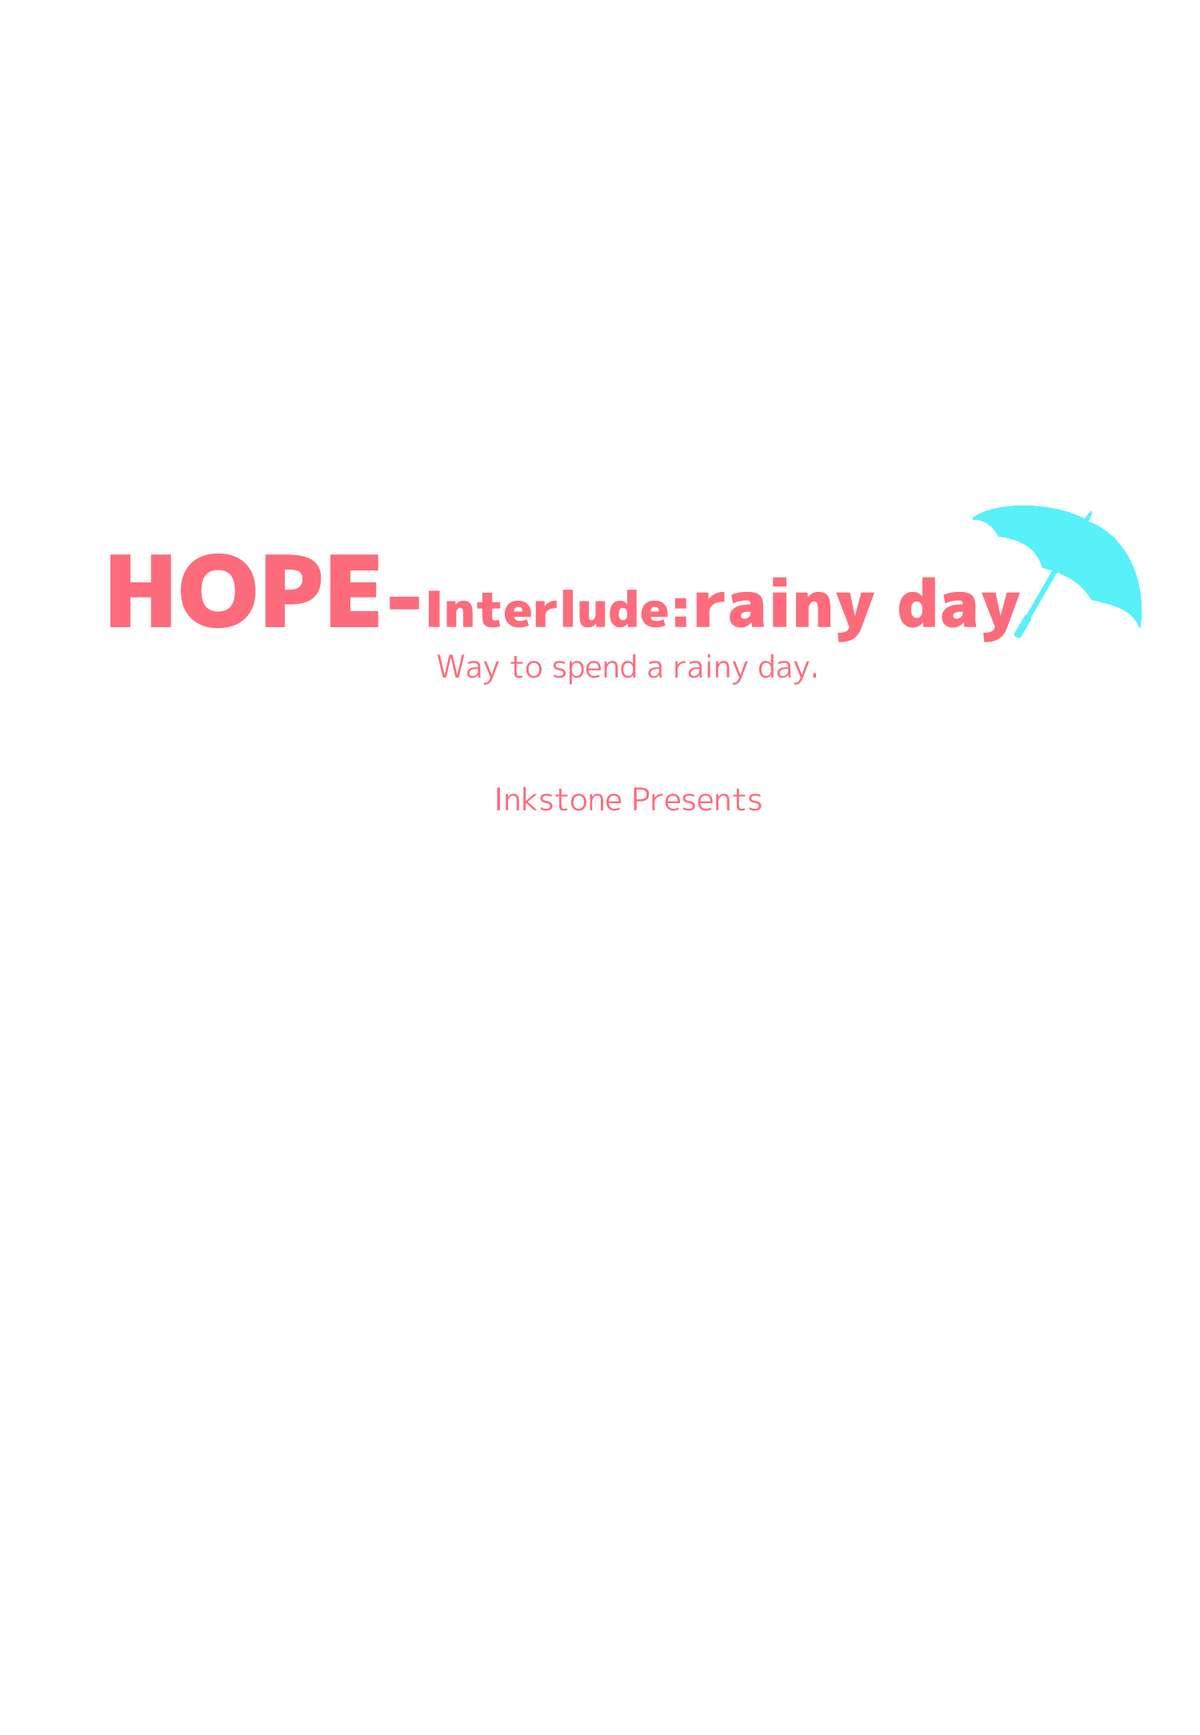 HOPE-Interlude:rainy day 29